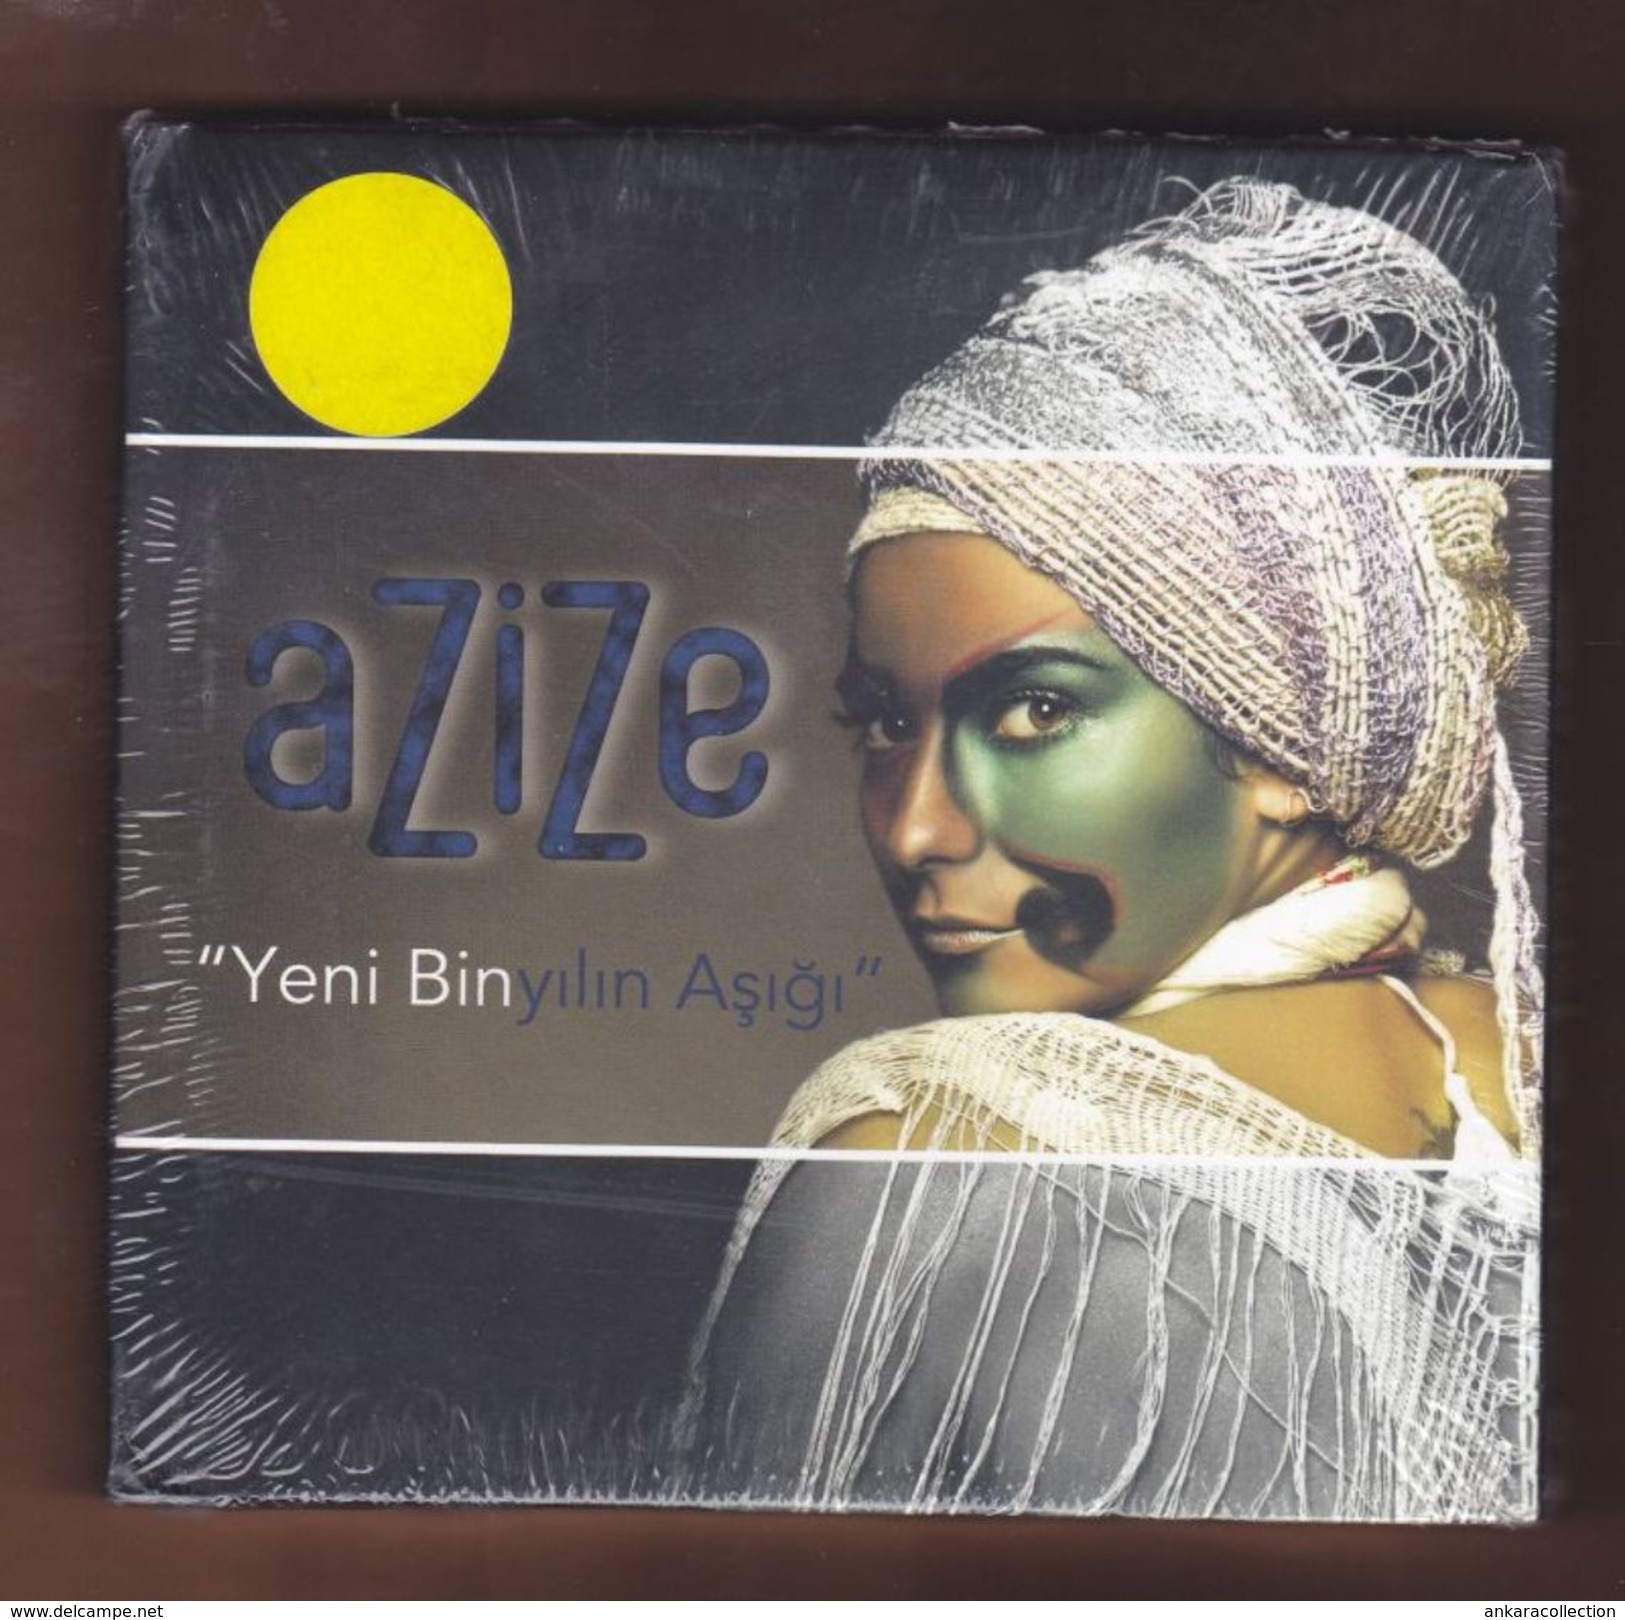 AC -  Azize Yeni Bin Yılın Aşığı BRAND NEW TURKISH MUSIC CD - World Music